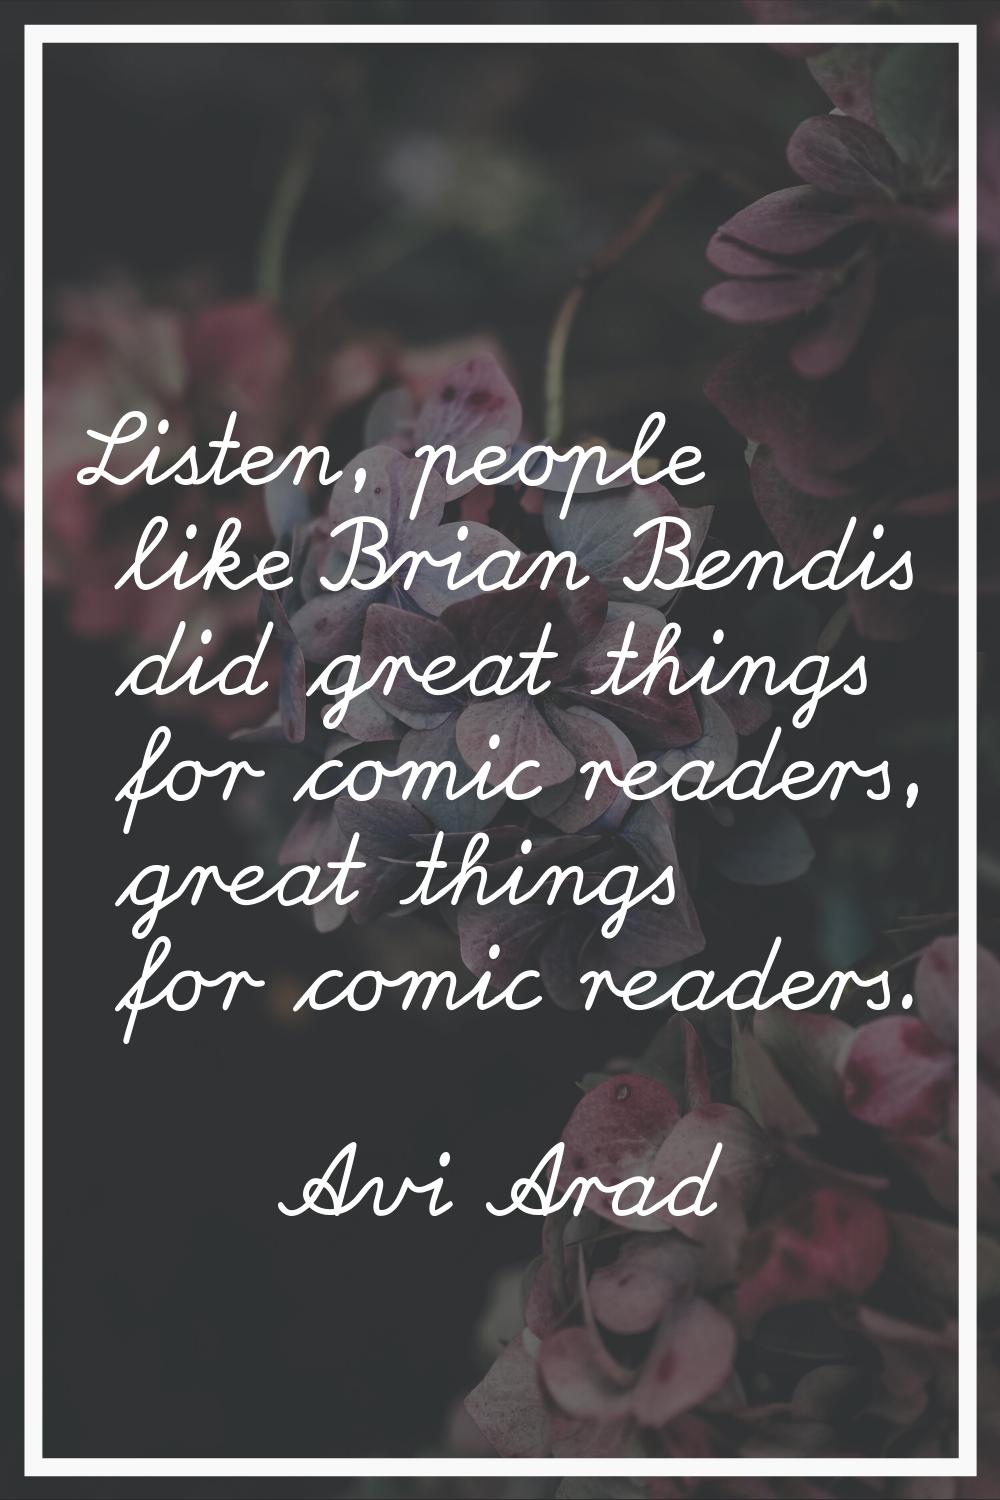 Listen, people like Brian Bendis did great things for comic readers, great things for comic readers